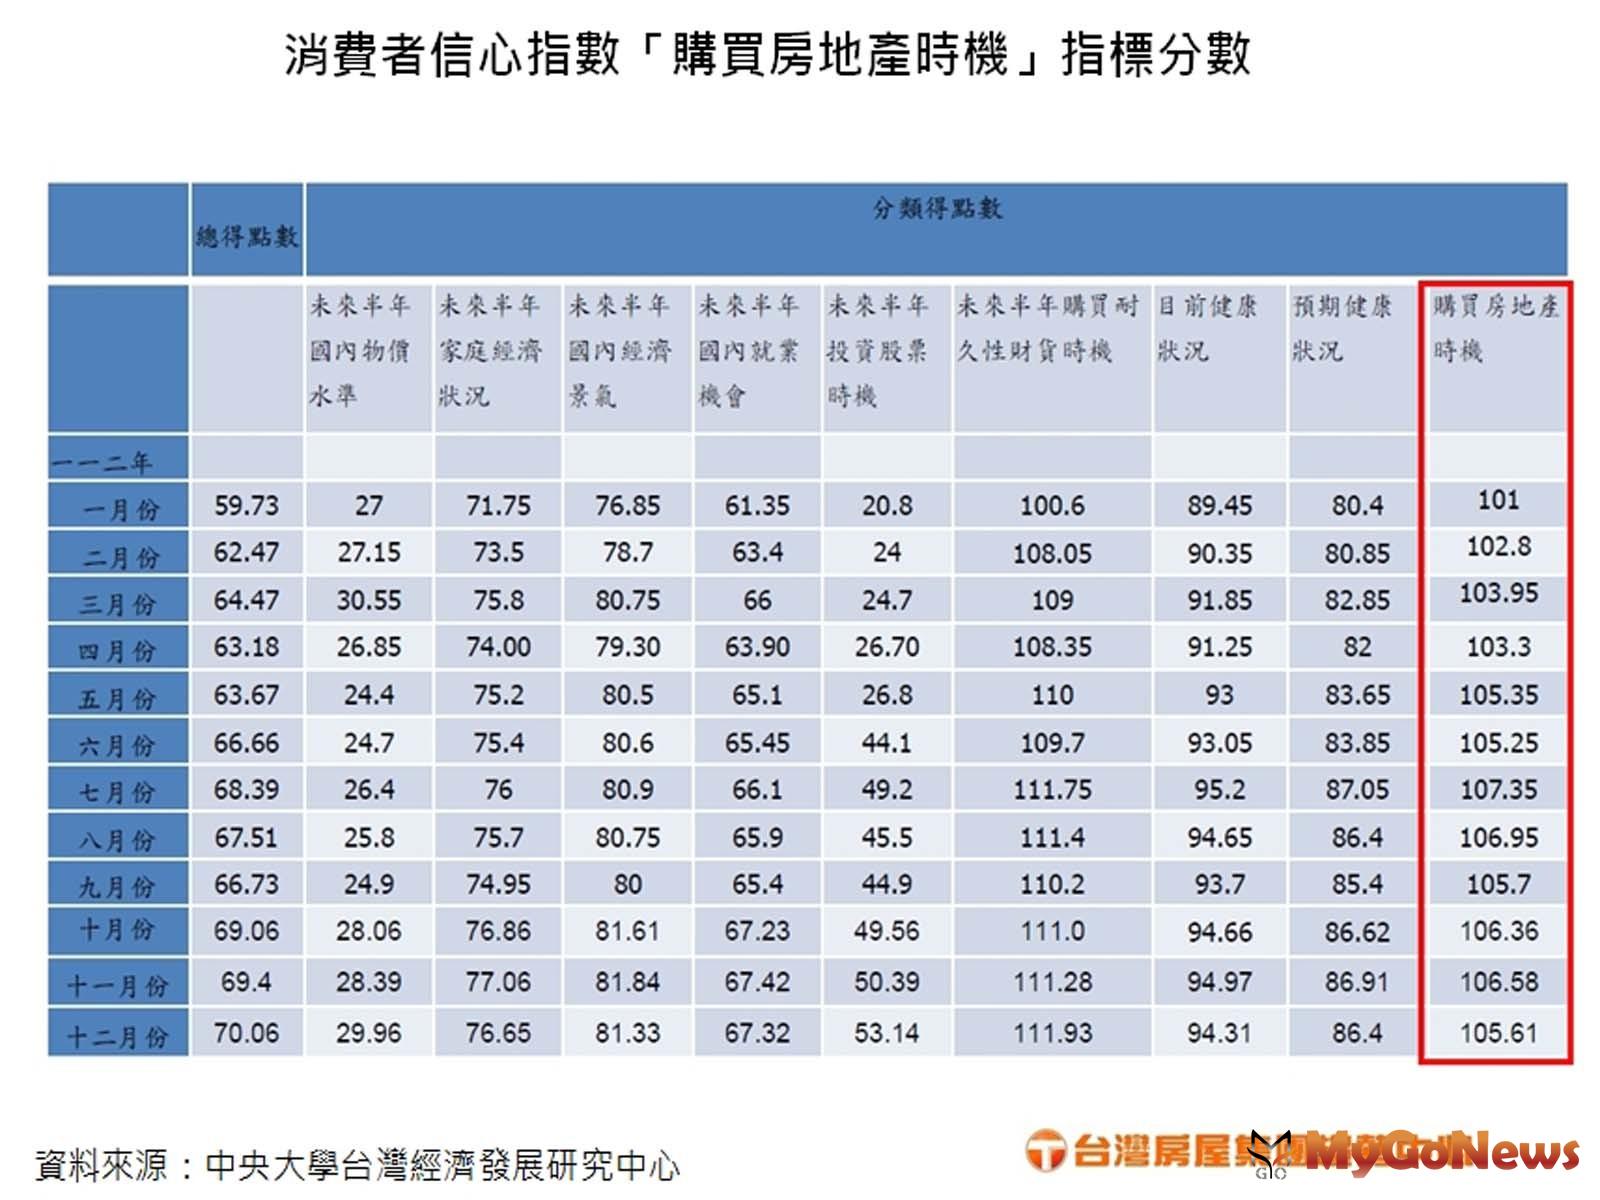 消費者信心指數「購買房地產時機」指標分數(圖/台灣房屋提供) MyGoNews房地產新聞 市場快訊